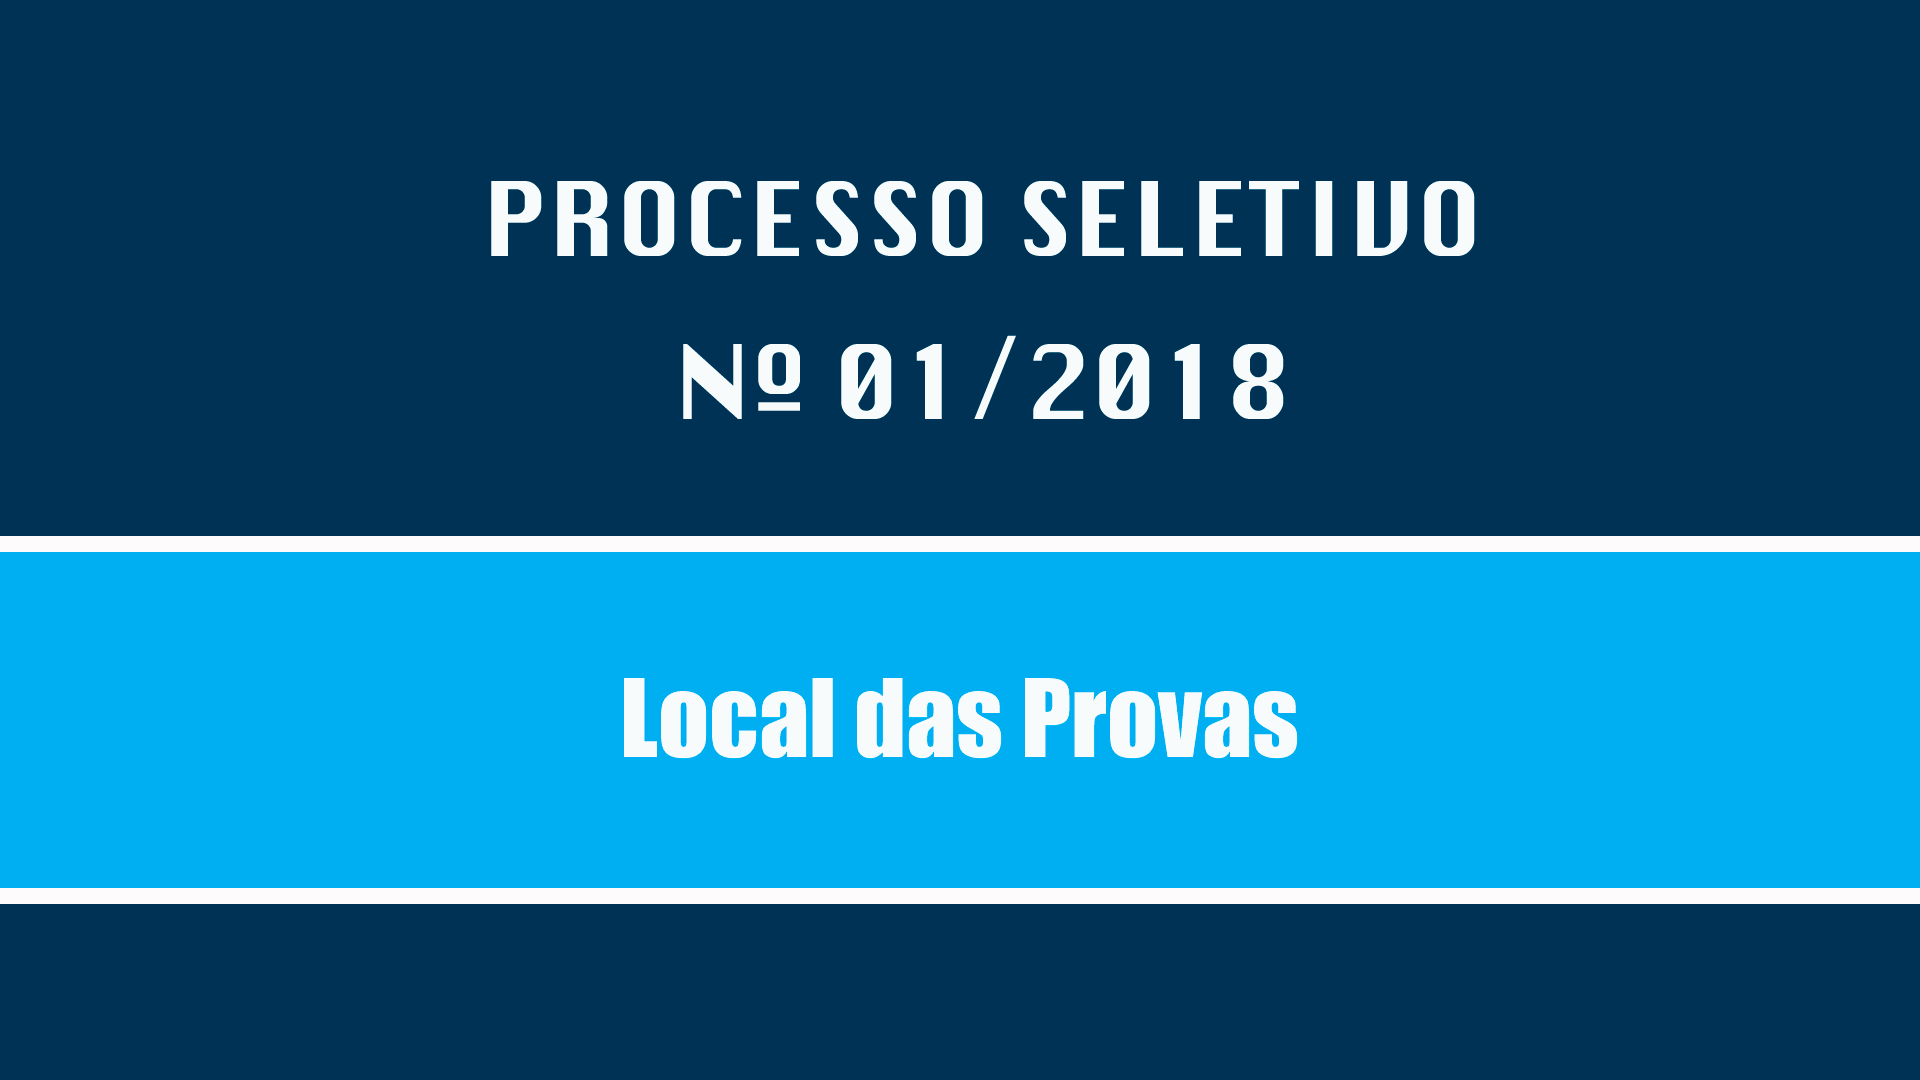 PROCESSO SELETIVO Nº 001/2018 - LOCAL DAS PROVAS